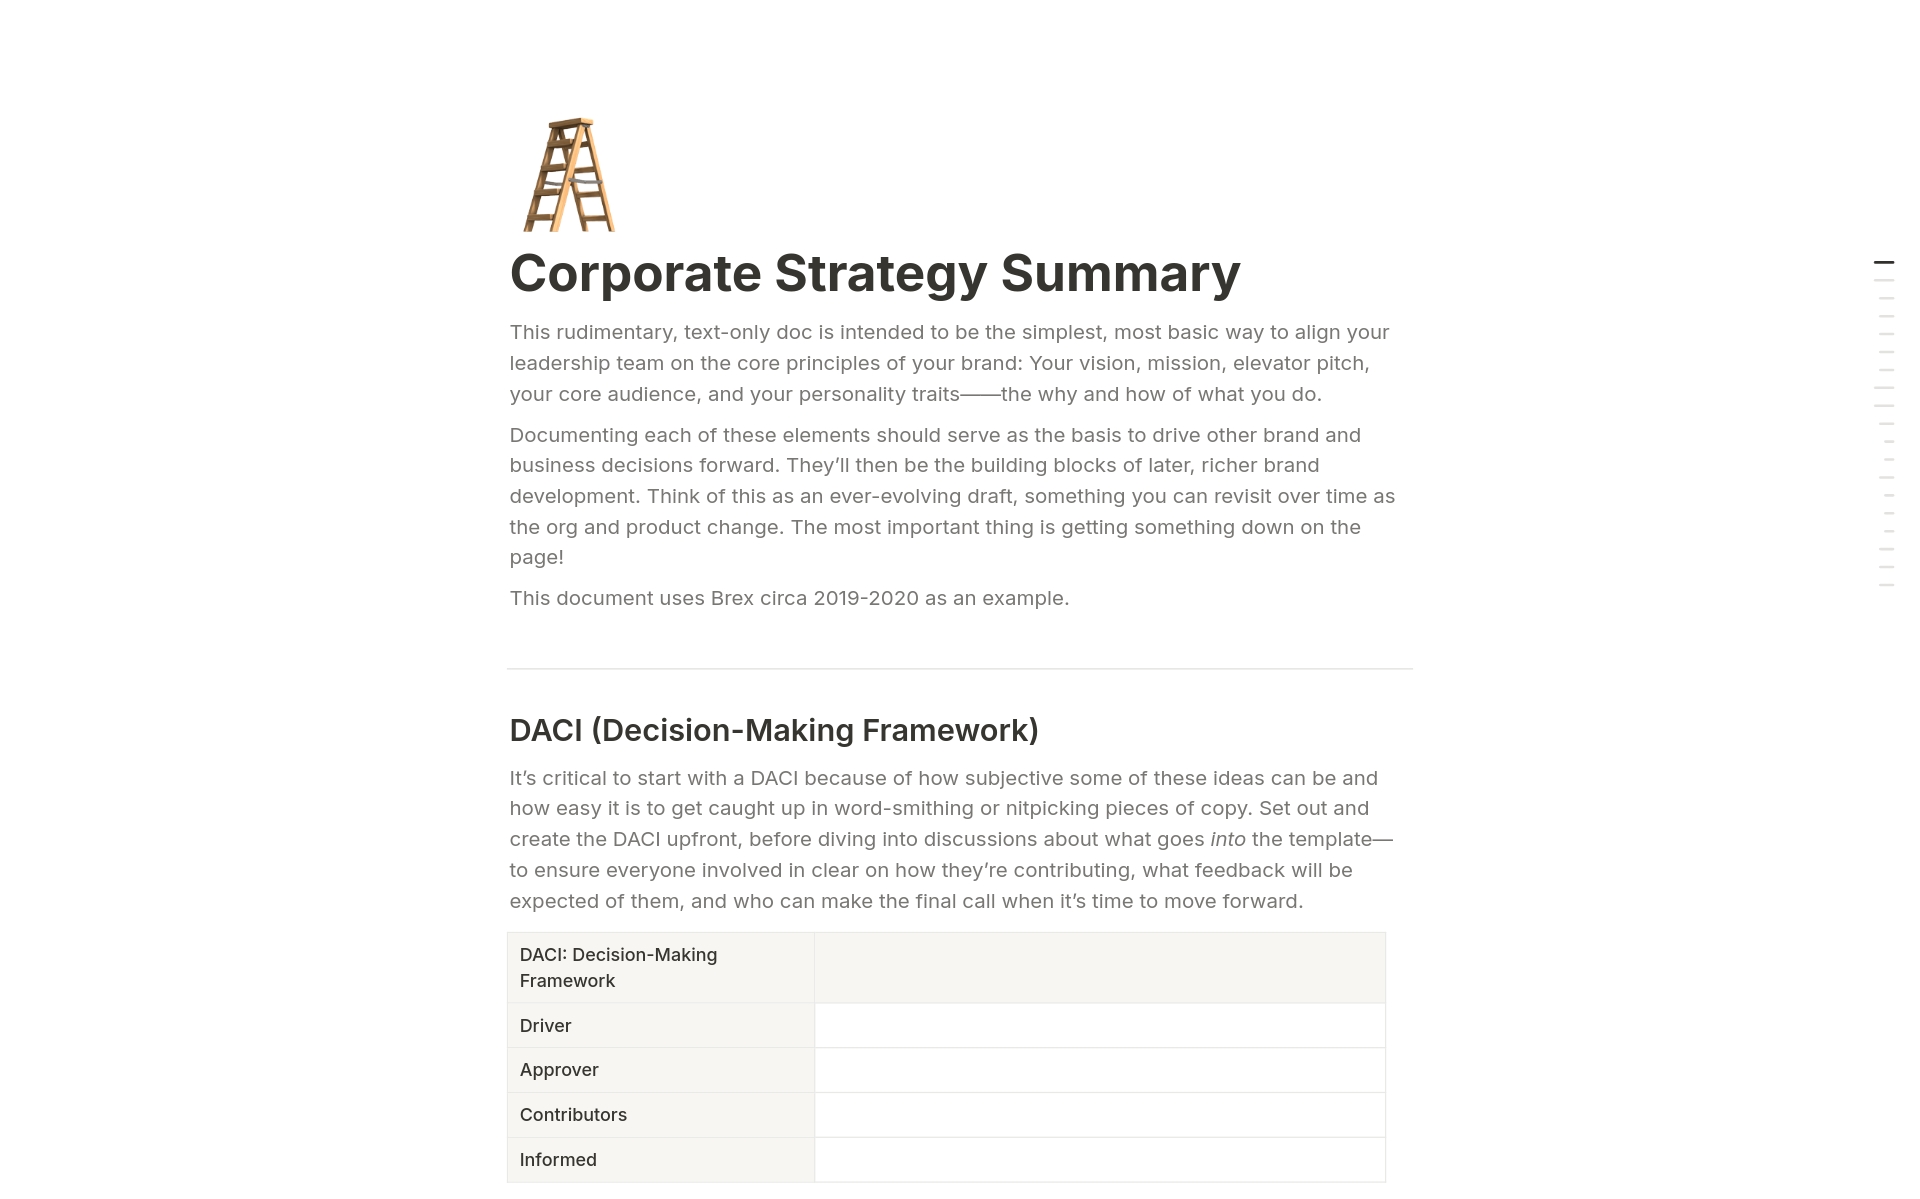 Uma prévia do modelo para Corporate Strategy Summary